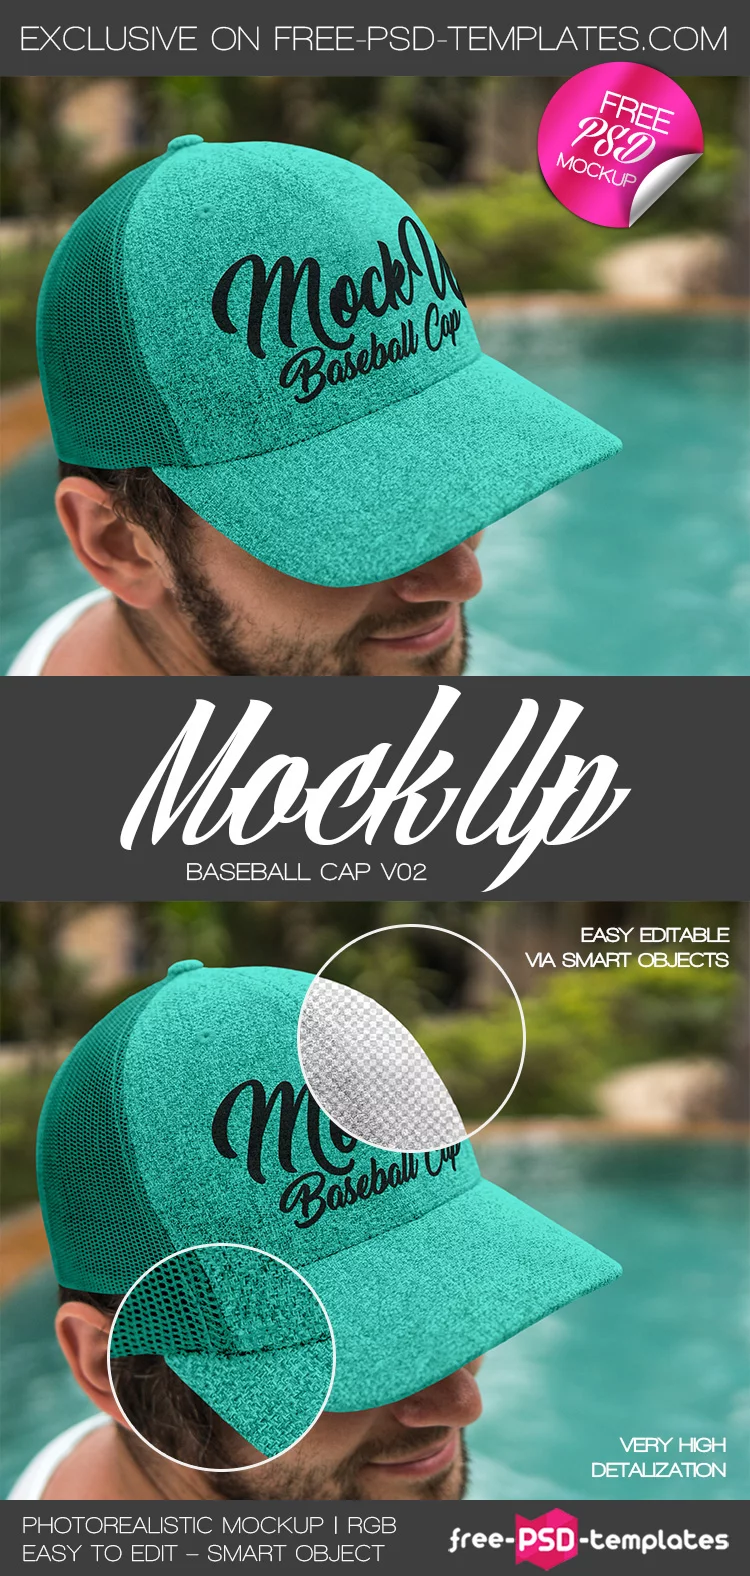 Free Baseball Cap V02 Mock-up in PSD